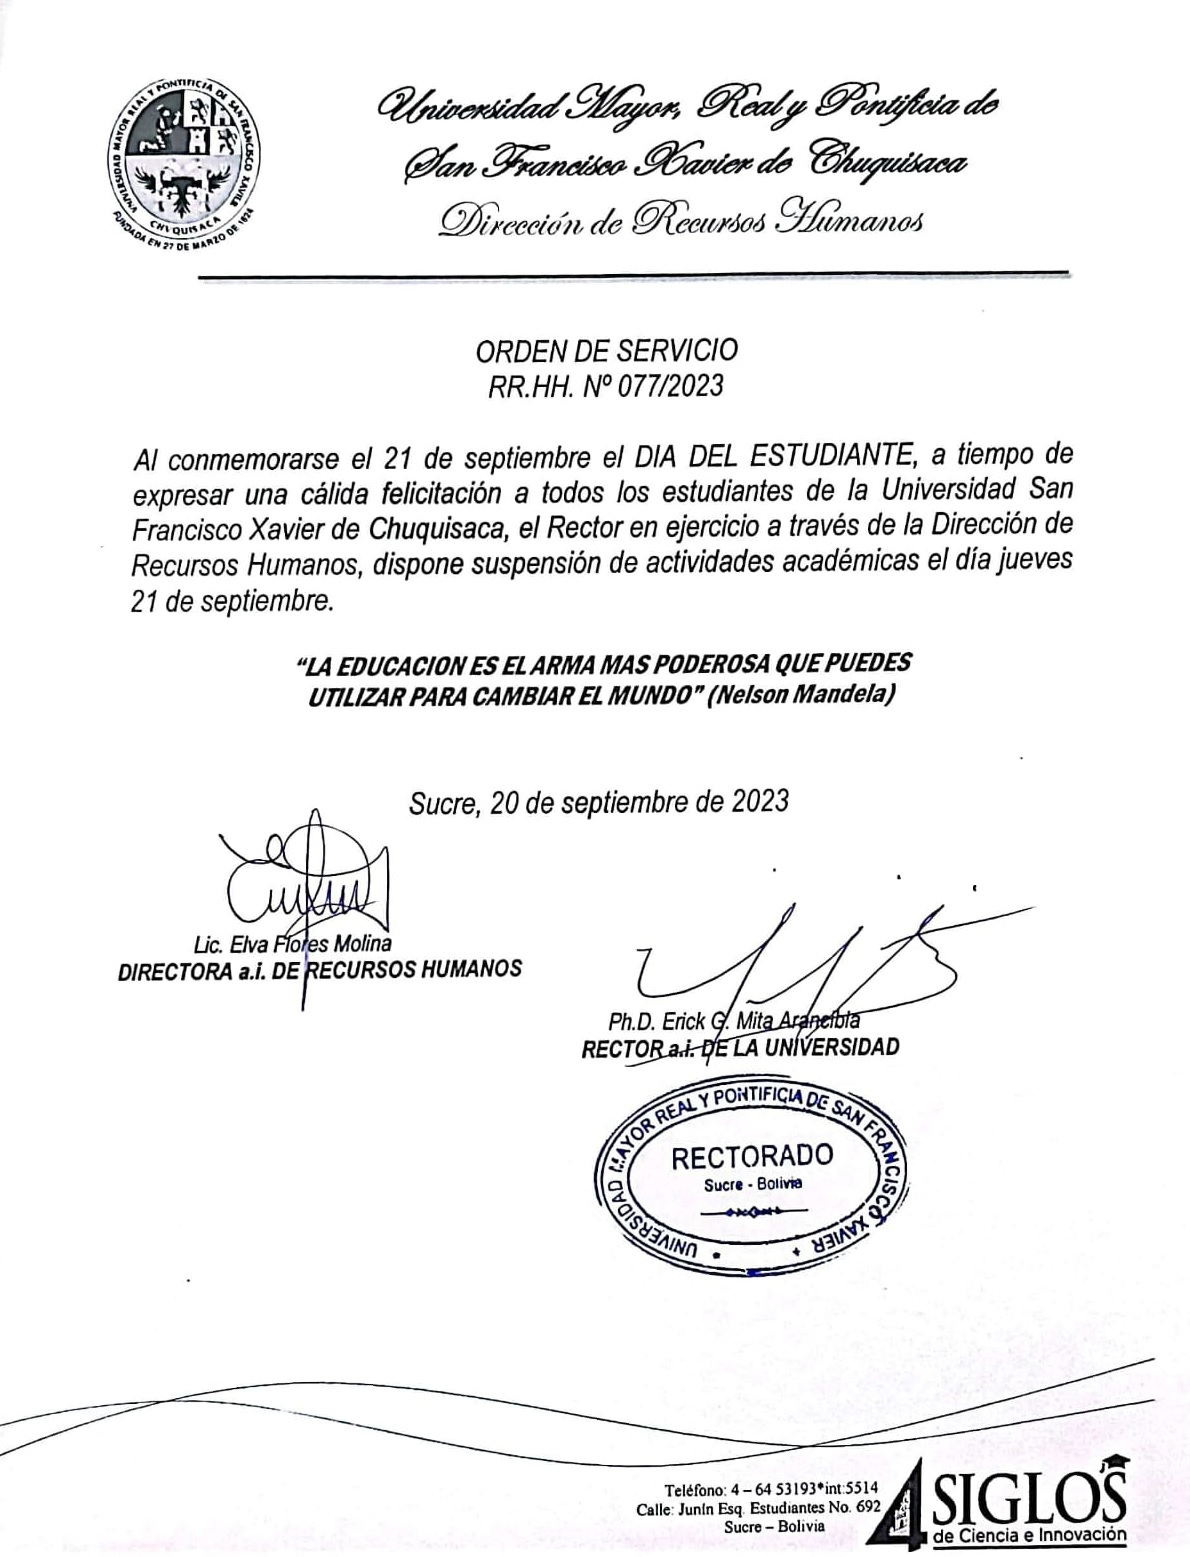 ORDEN DE SERVICIO RR.HH. Nº 077/2023, SUSPENSIÓN DE ACTIVIDADES ACADÉMICAS DÍA DEL ESTUDIANTE.